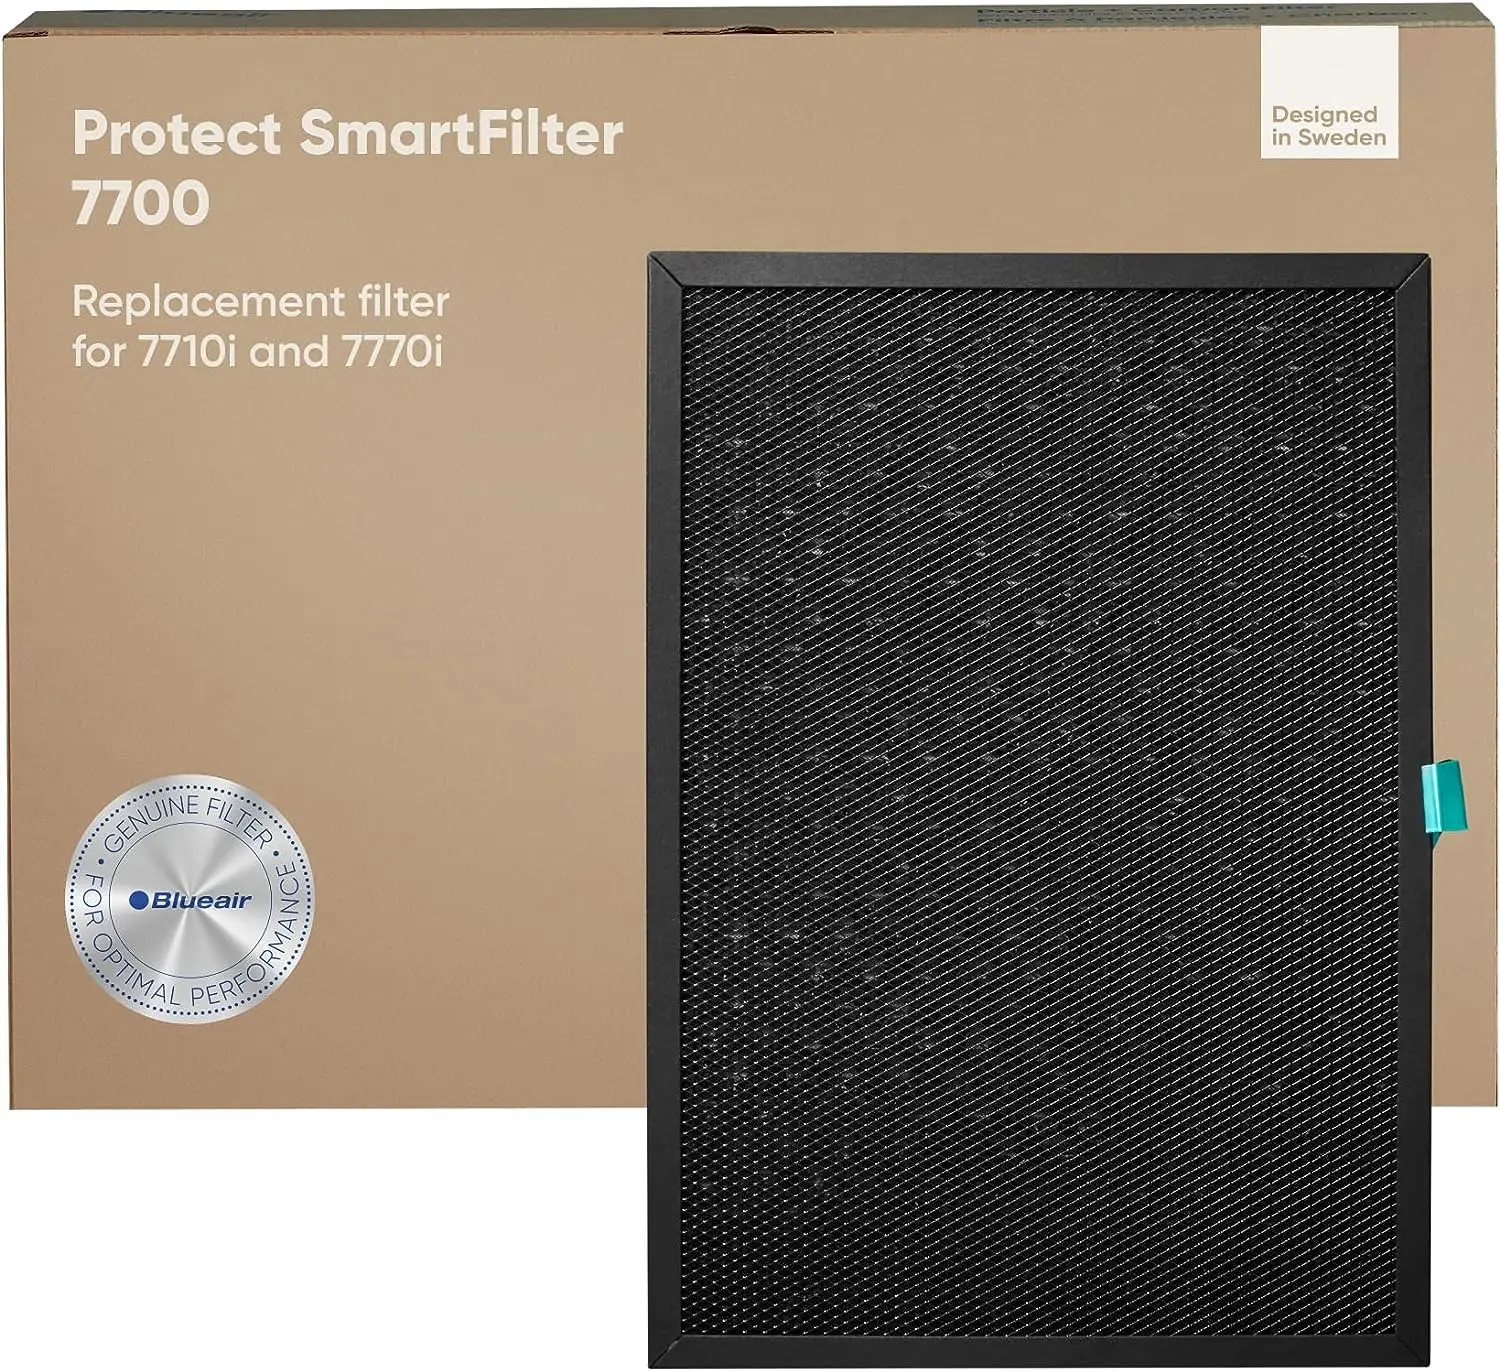 

7700 SmartFilter, подлинный Сменный фильтр для защиты 7770i, 7710i домашние очистители воздуха для вирусов, бактерий, пыли, дыма и алюминия